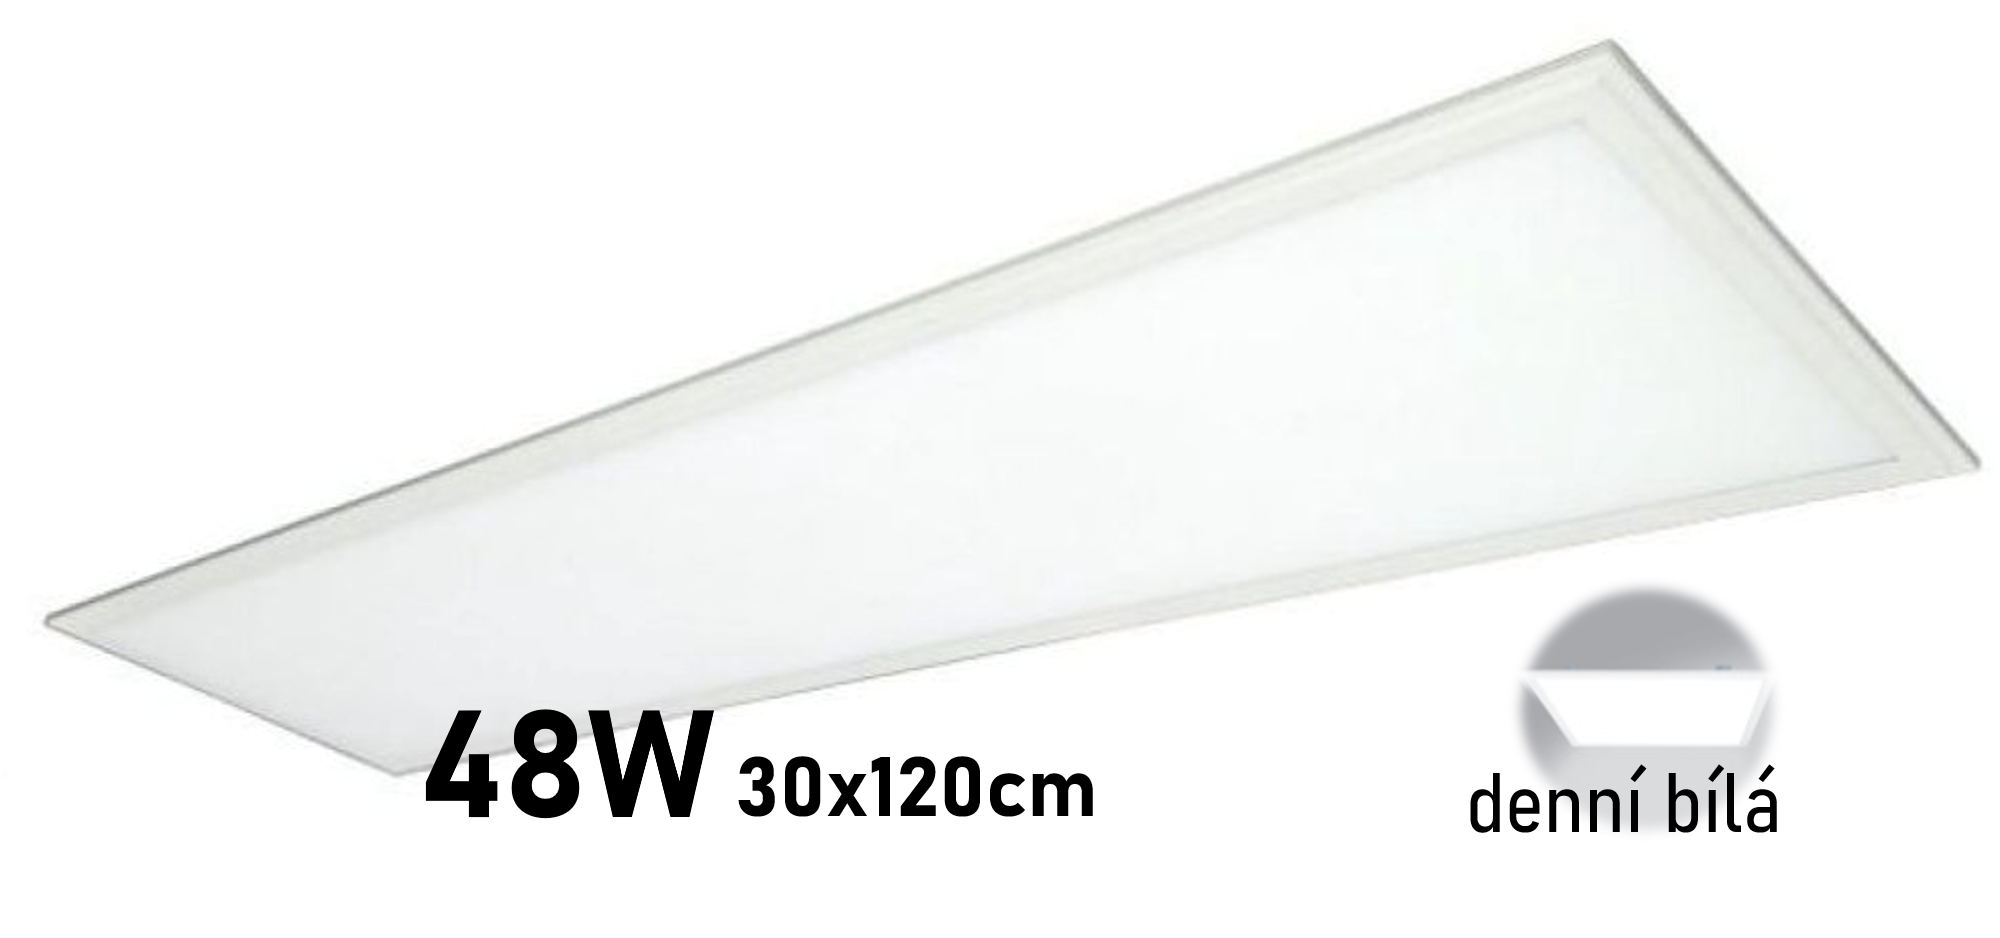 LED panel P30120 48W 30x120cm DENNÍ BÍLÁ